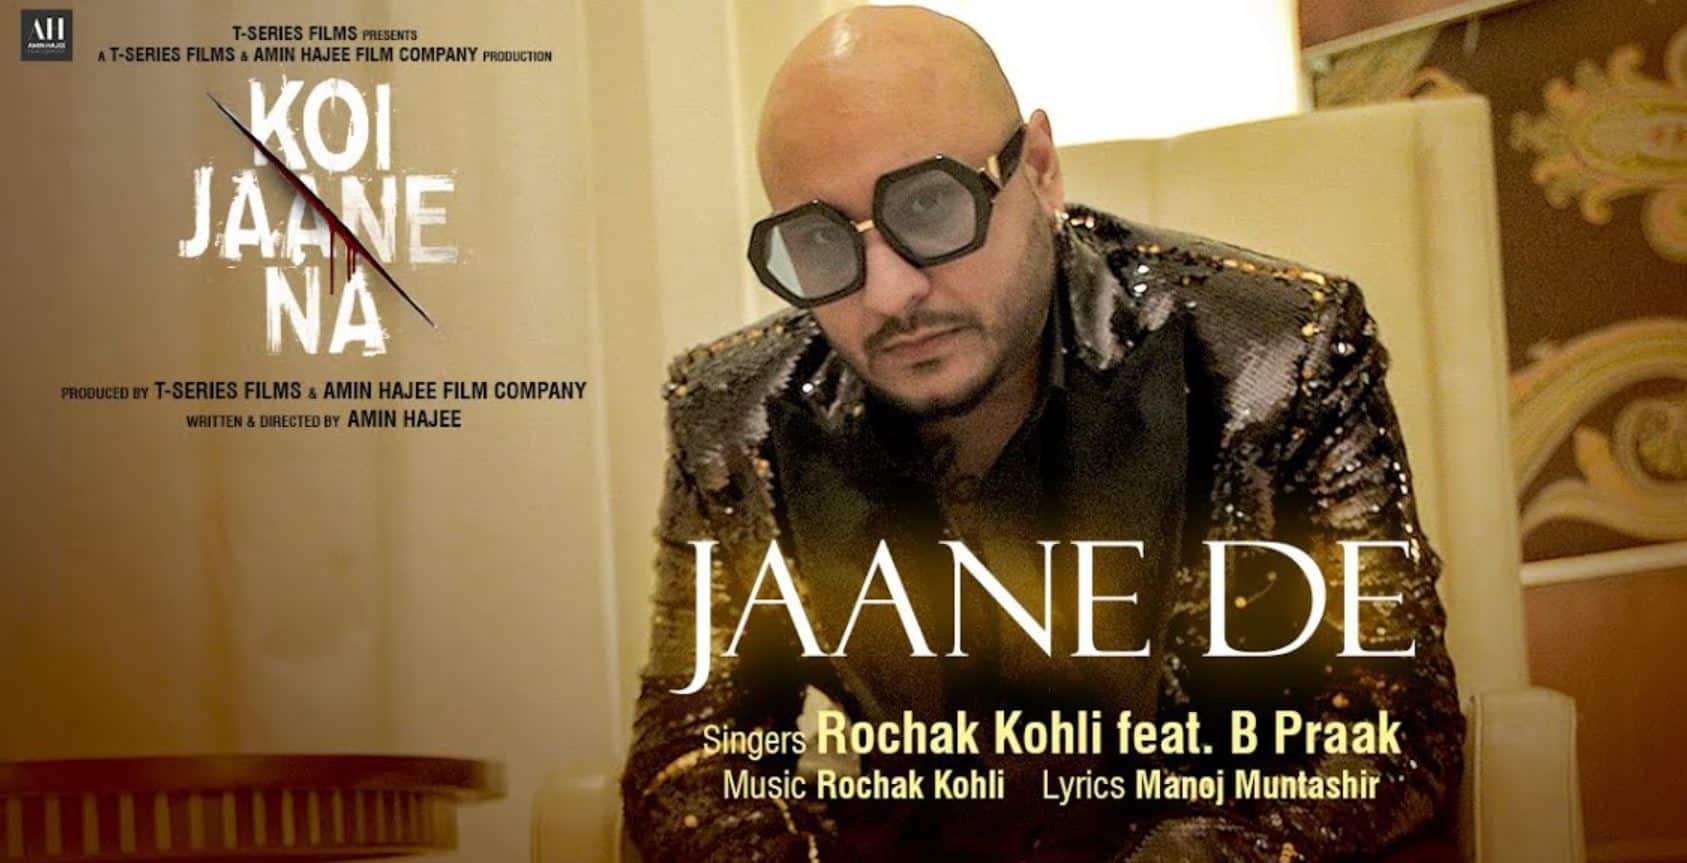 Jaane De Lyrics In Hindi - Koi Jaane Na